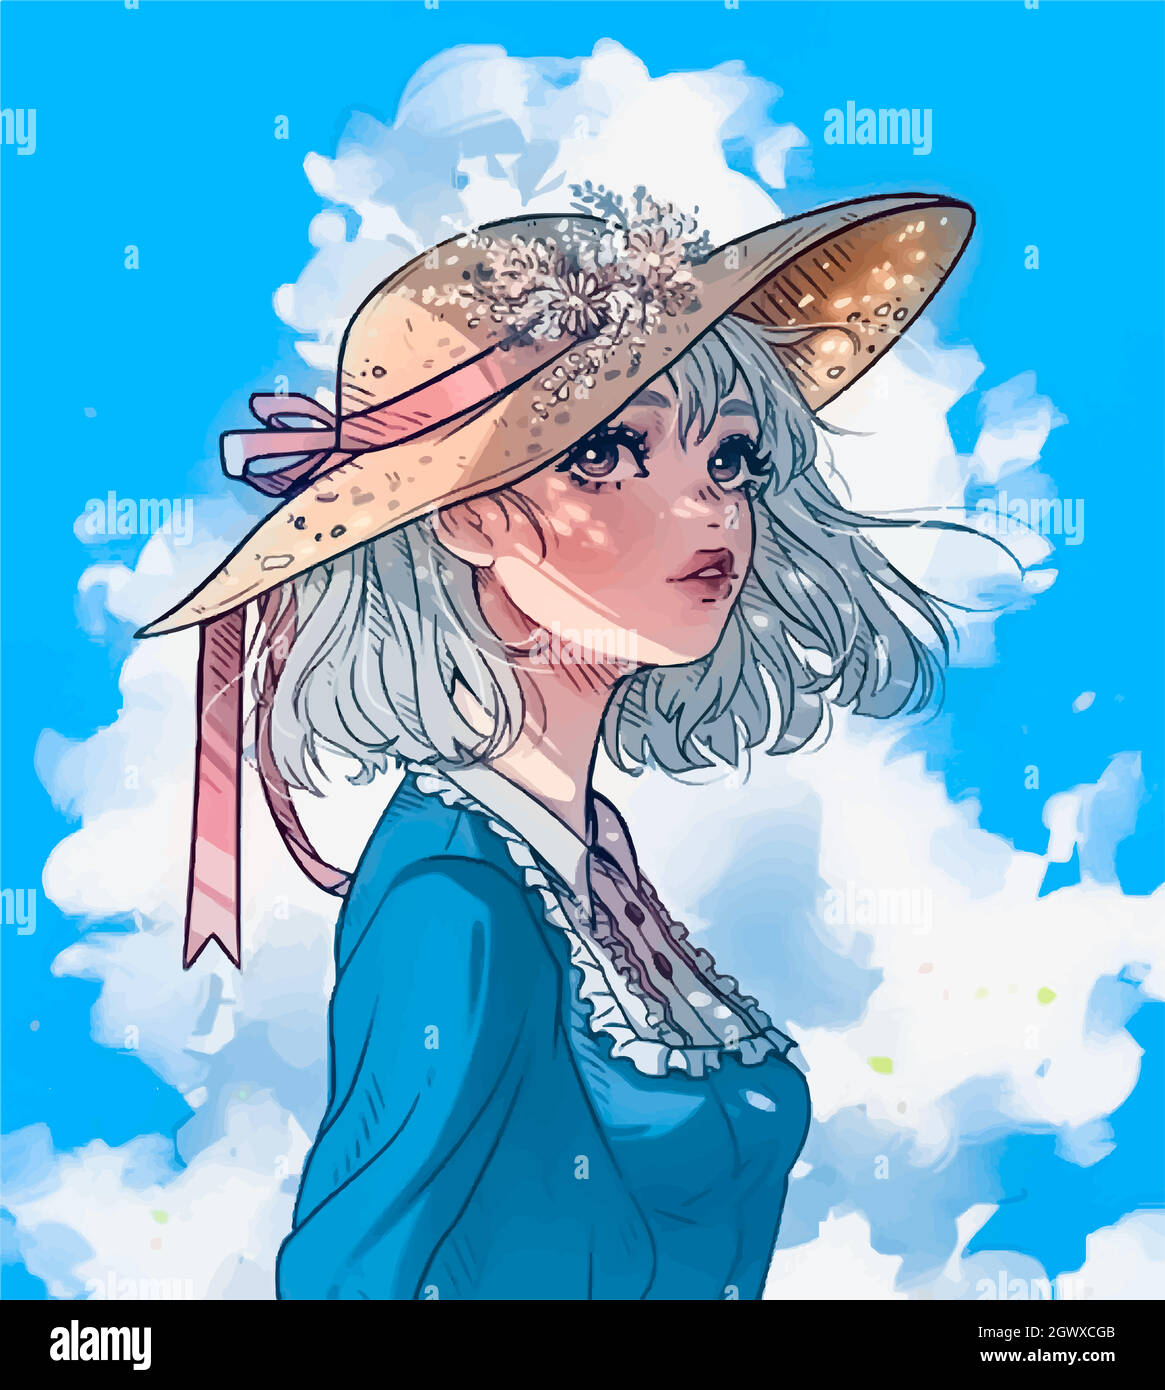 anime fille dans une robe bleue et chapeau avec des fleurs contre le ciel Illustration de Vecteur